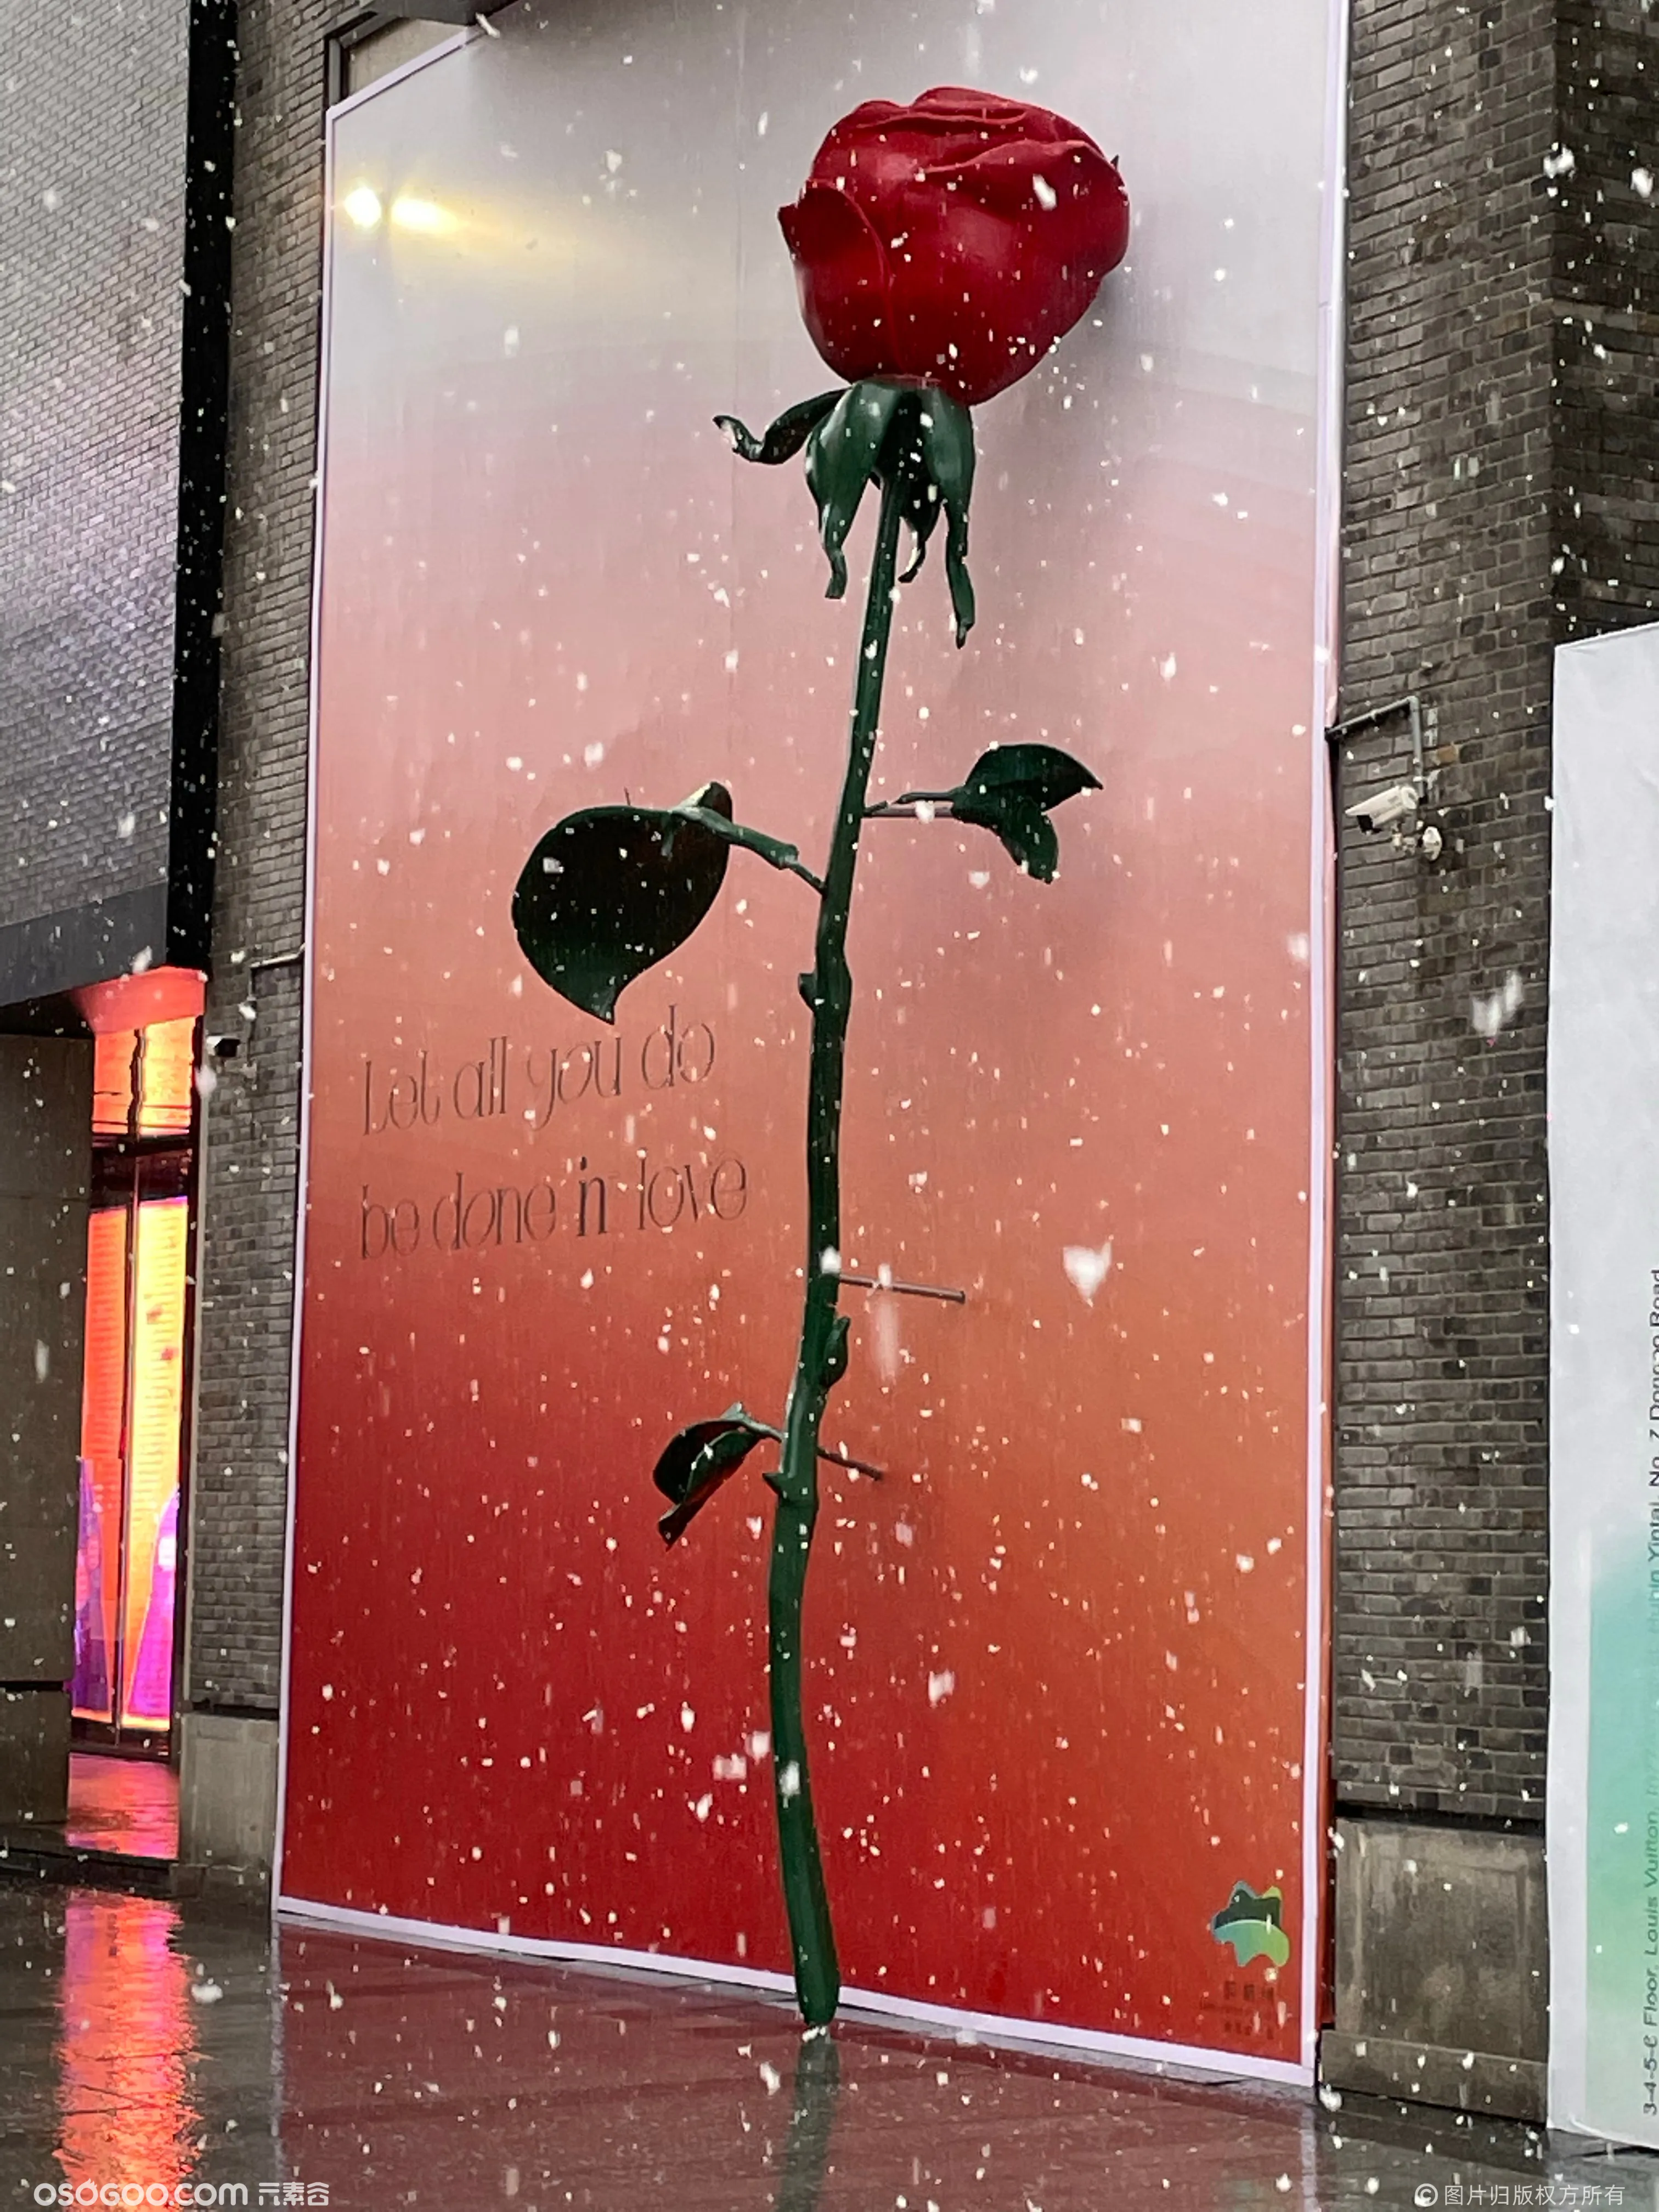 巨型玫瑰-绽放爱与力量